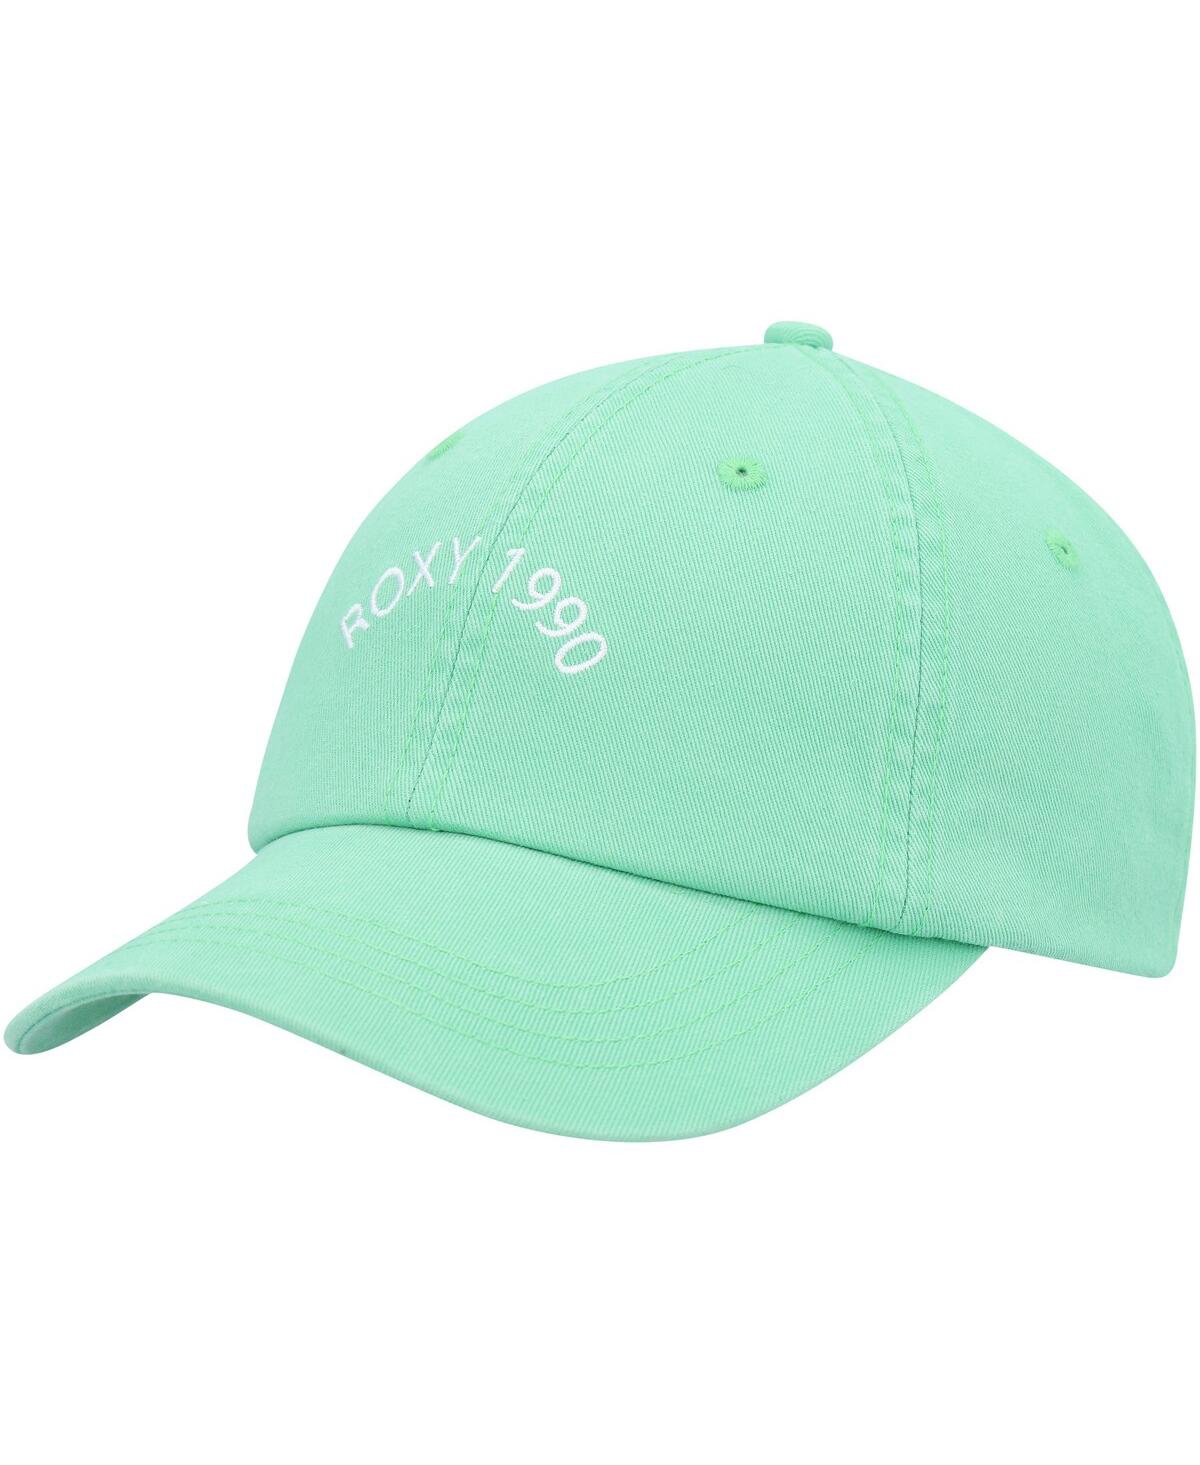 Women's Roxy Mint Toadstool Adjustable Hat - Mint